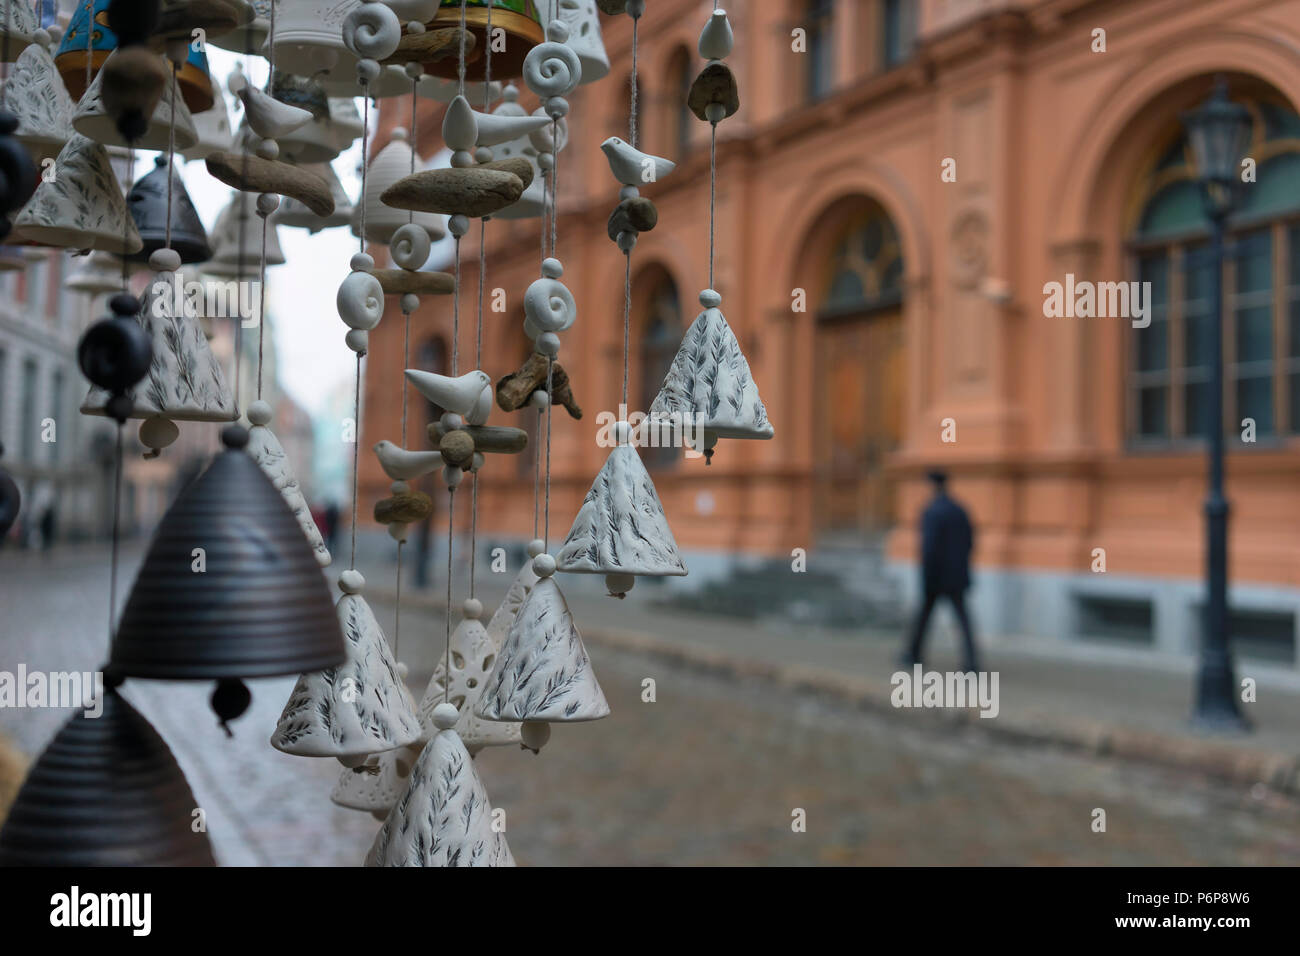 Dekorative Keramik Glocken böse Geister auf den Weihnachtsmarkt in der Altstadt von Riga zu erschrecken Stockfoto